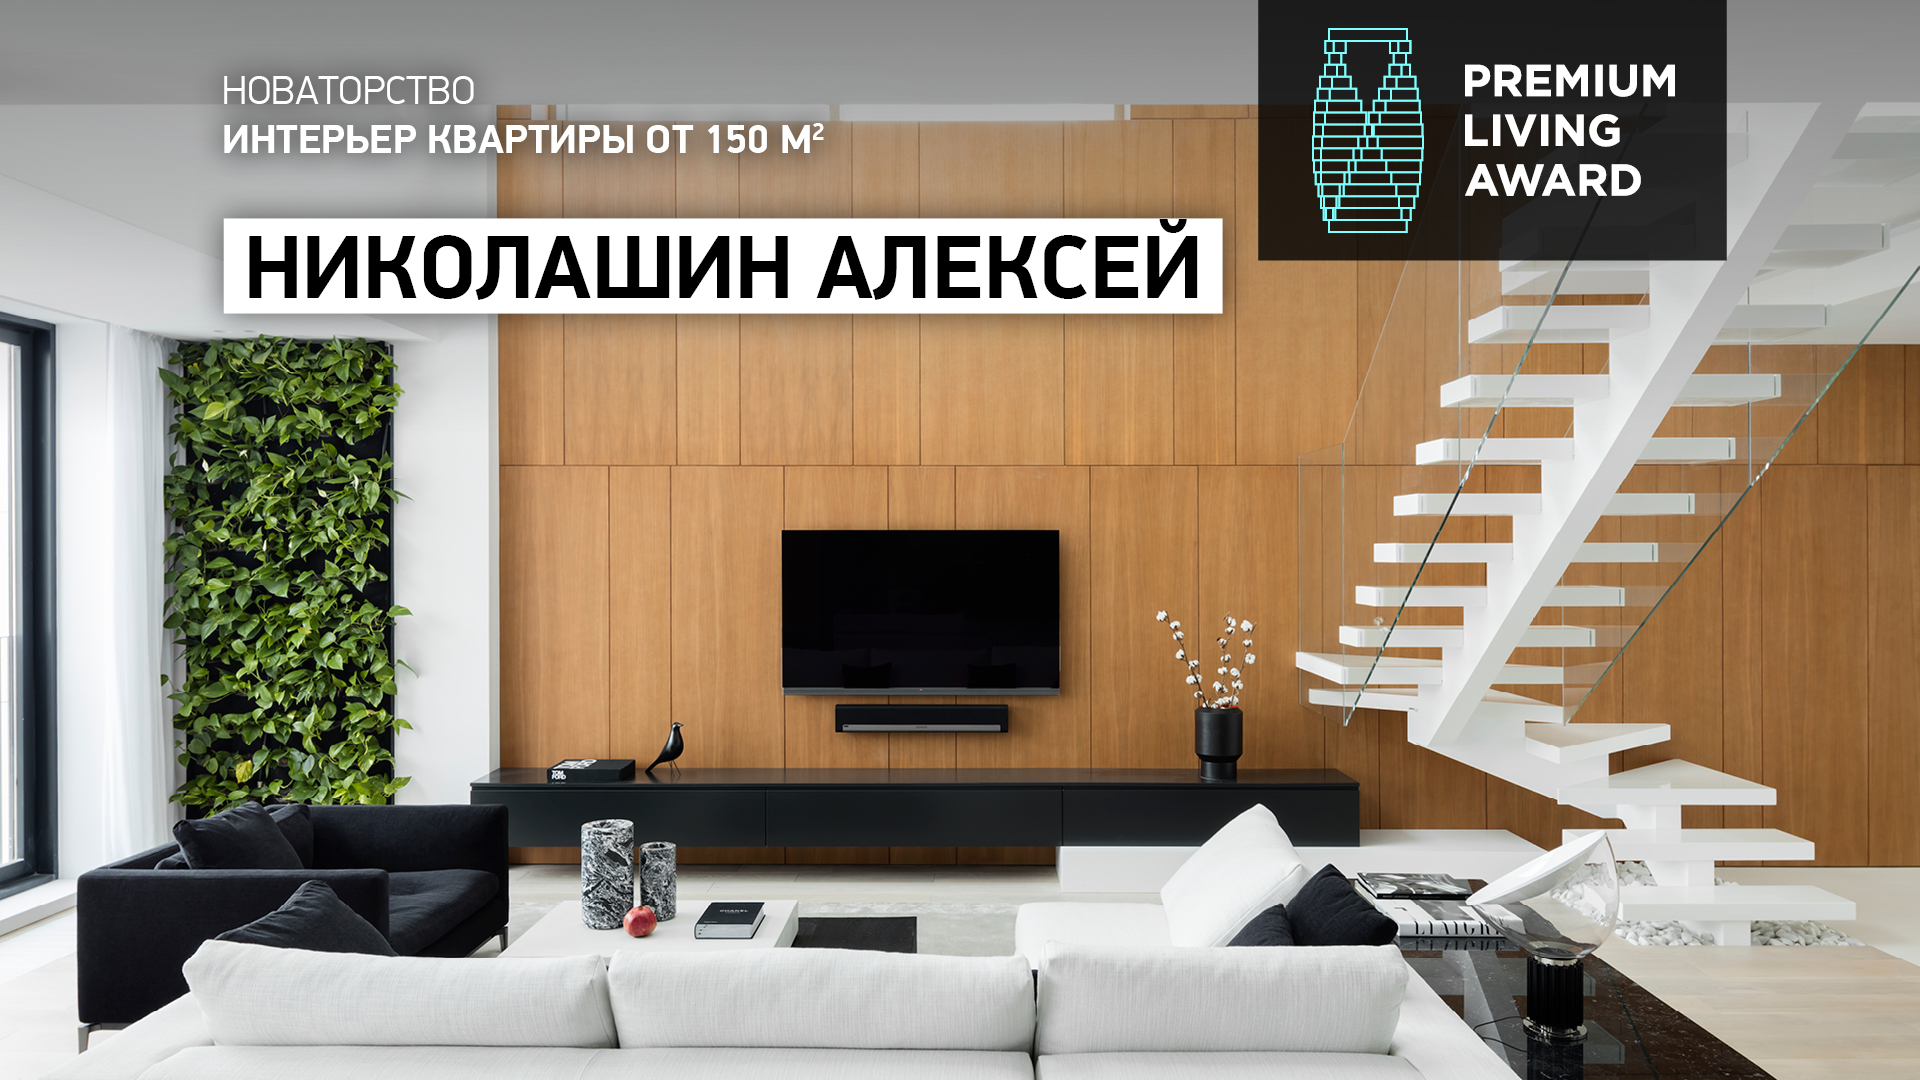 В номинации «Интерьер квартиры от 150 кв. м» — автор проекта квартиры в Москве Алексей Николашин